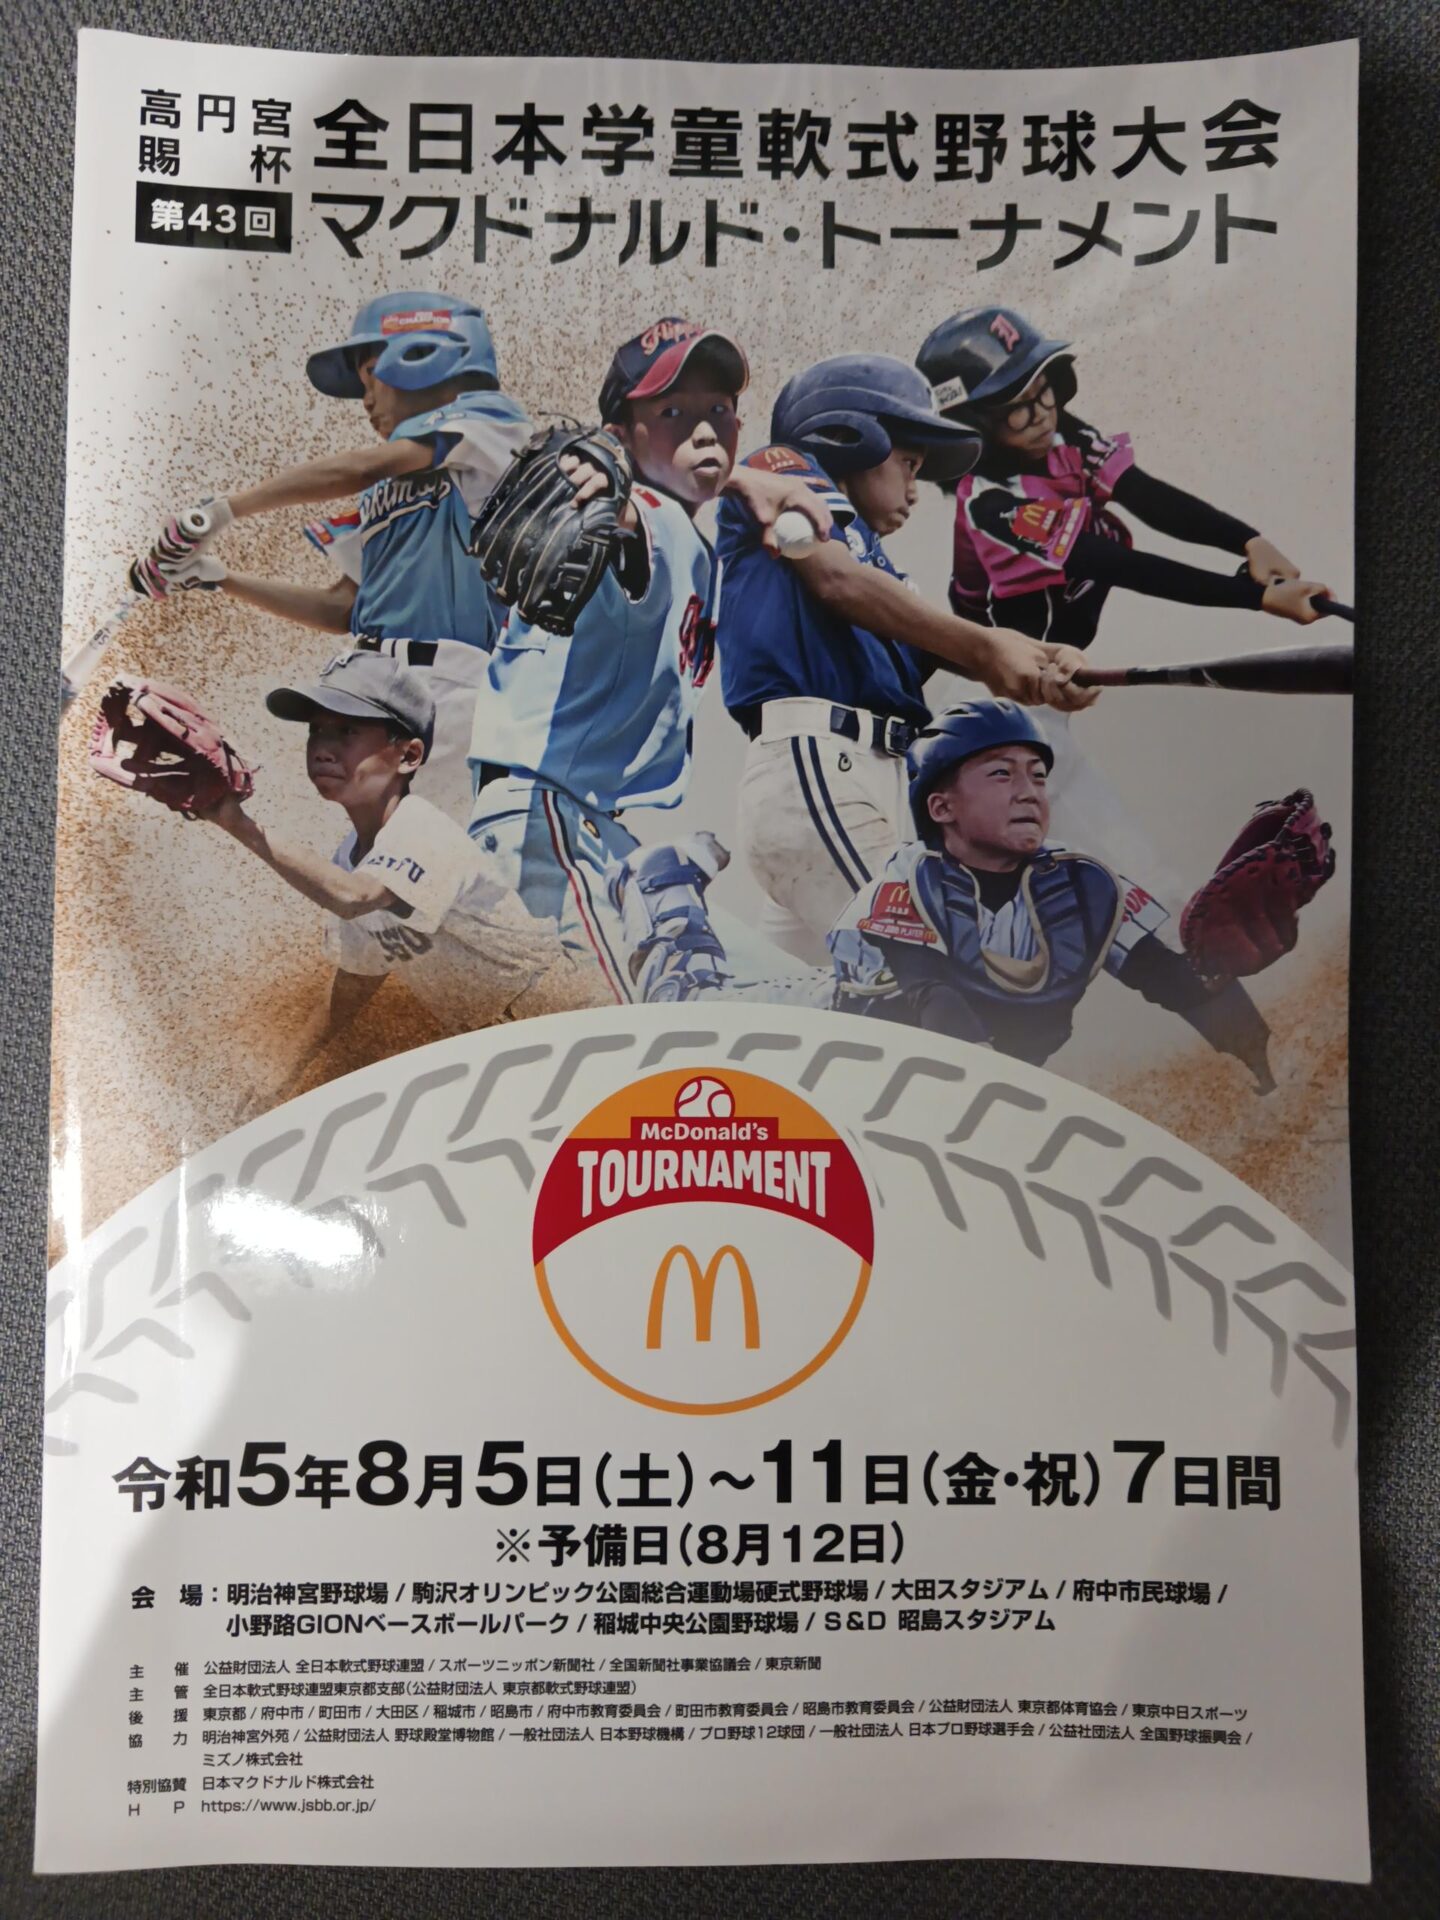 高円宮賜杯 第43回 全日本学童軟式野球大会マクドナルド・トーナメント